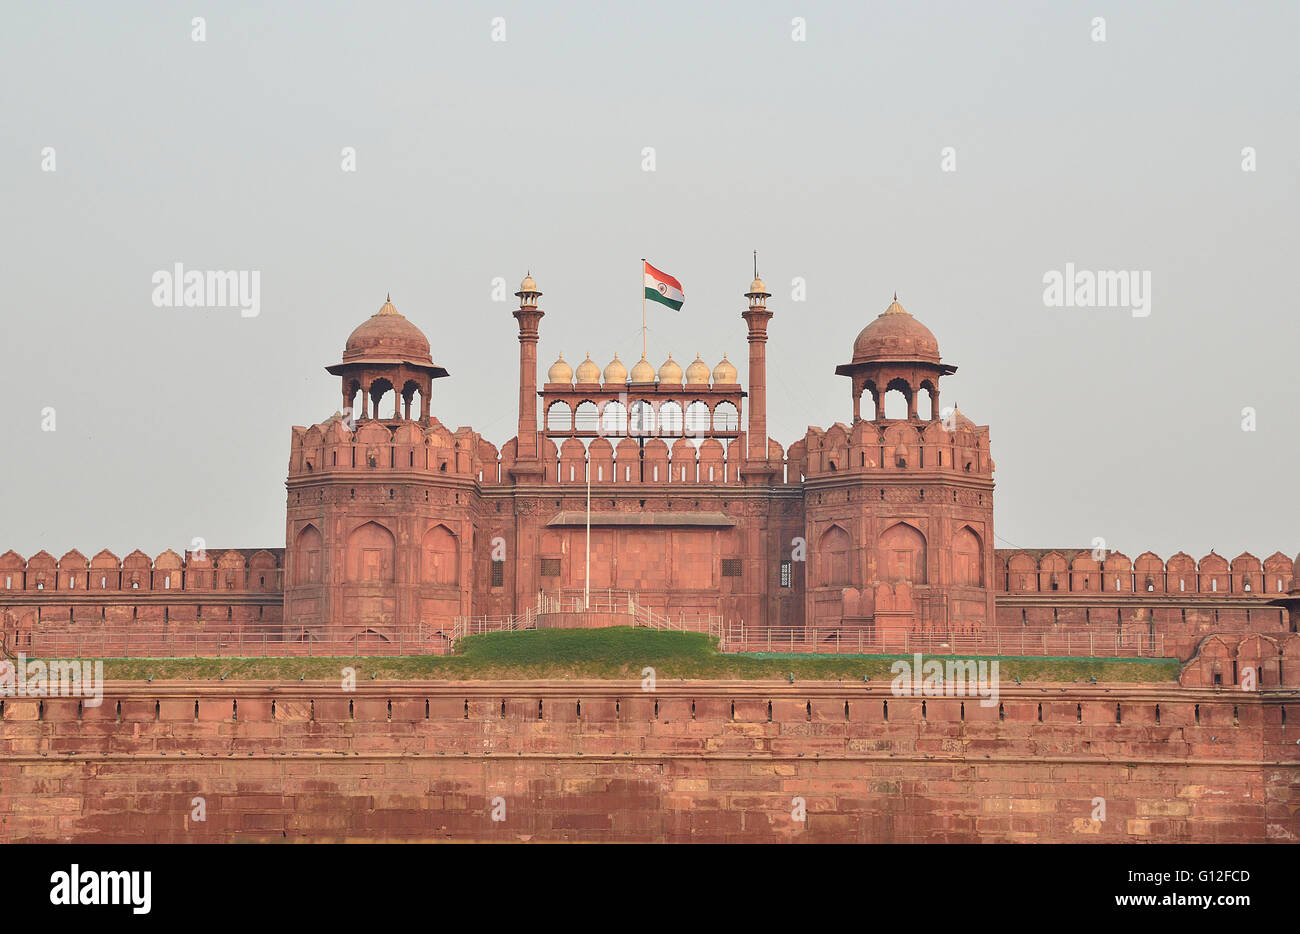 Indian bandiera nazionale vola alto oltre il Forte Rosso, New Delhi, India Foto Stock